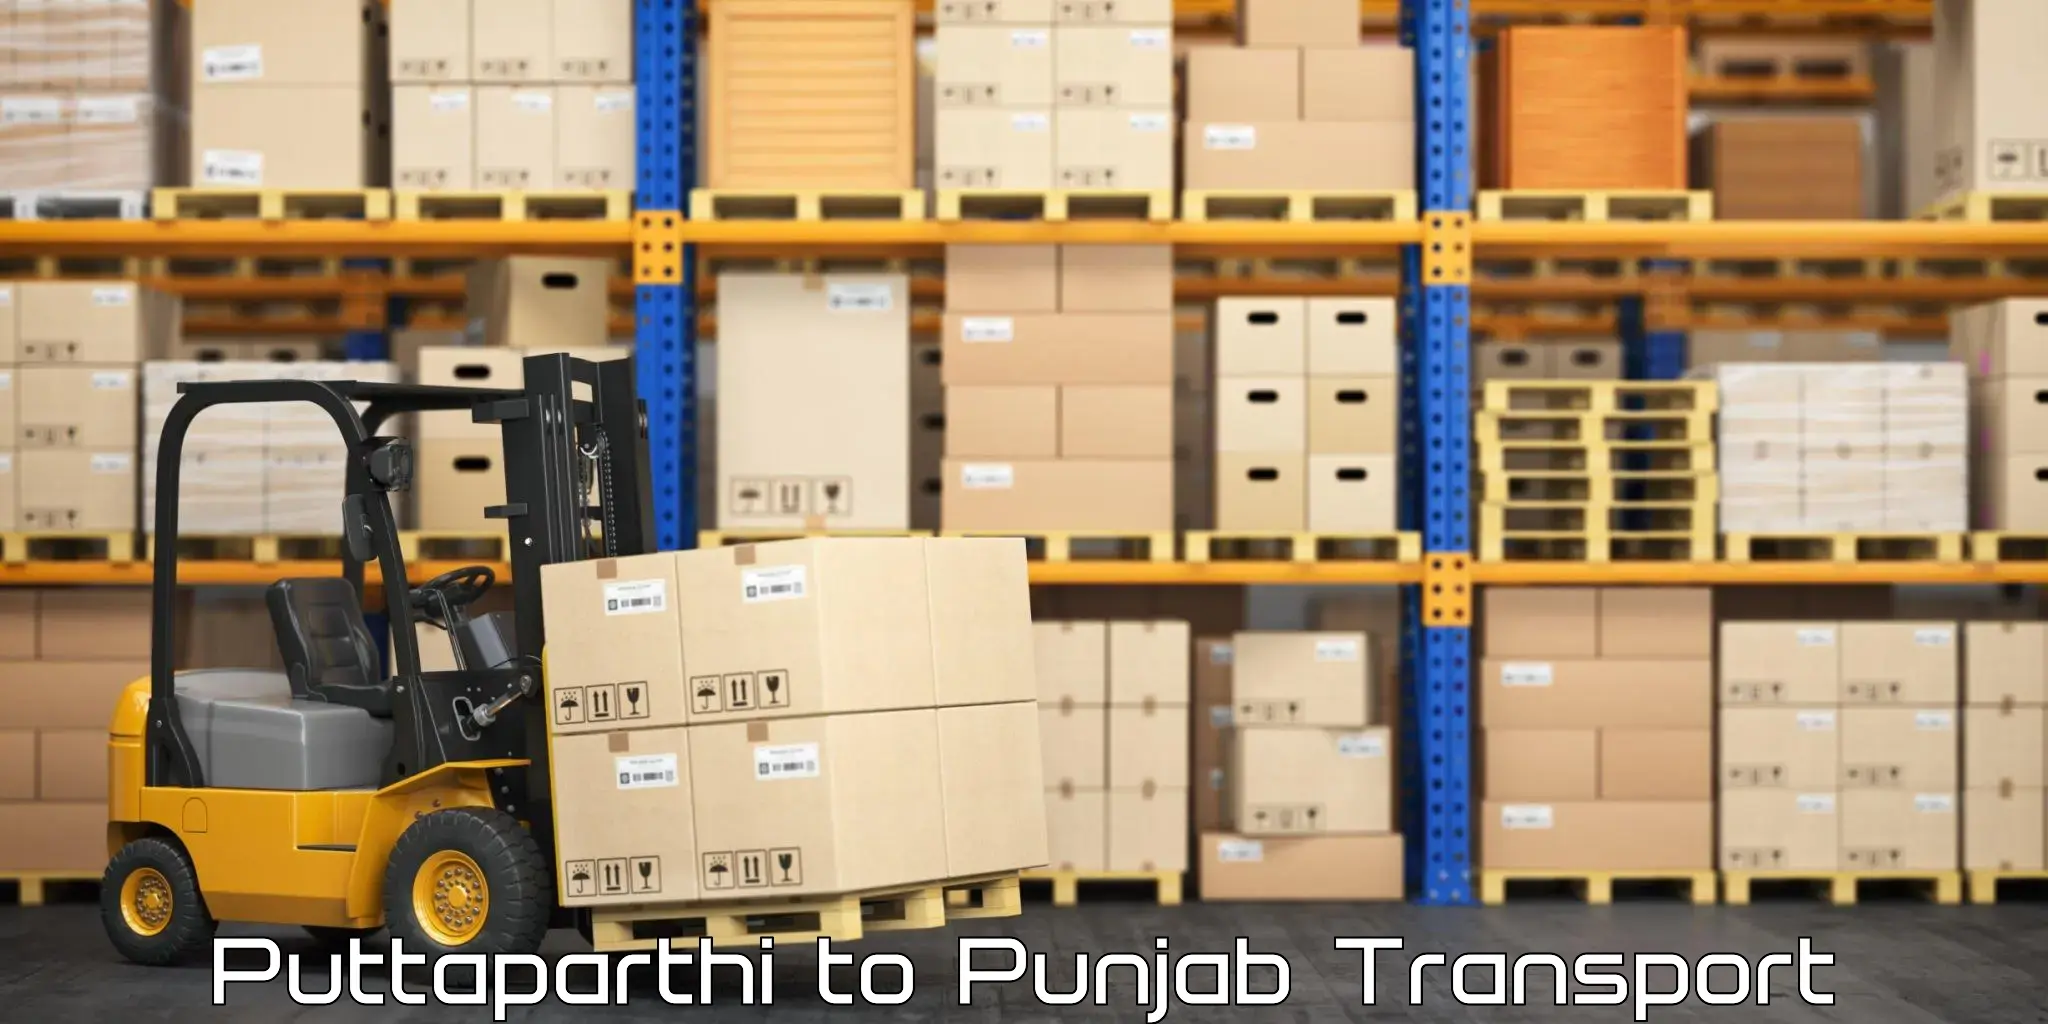 Road transport services Puttaparthi to Punjab